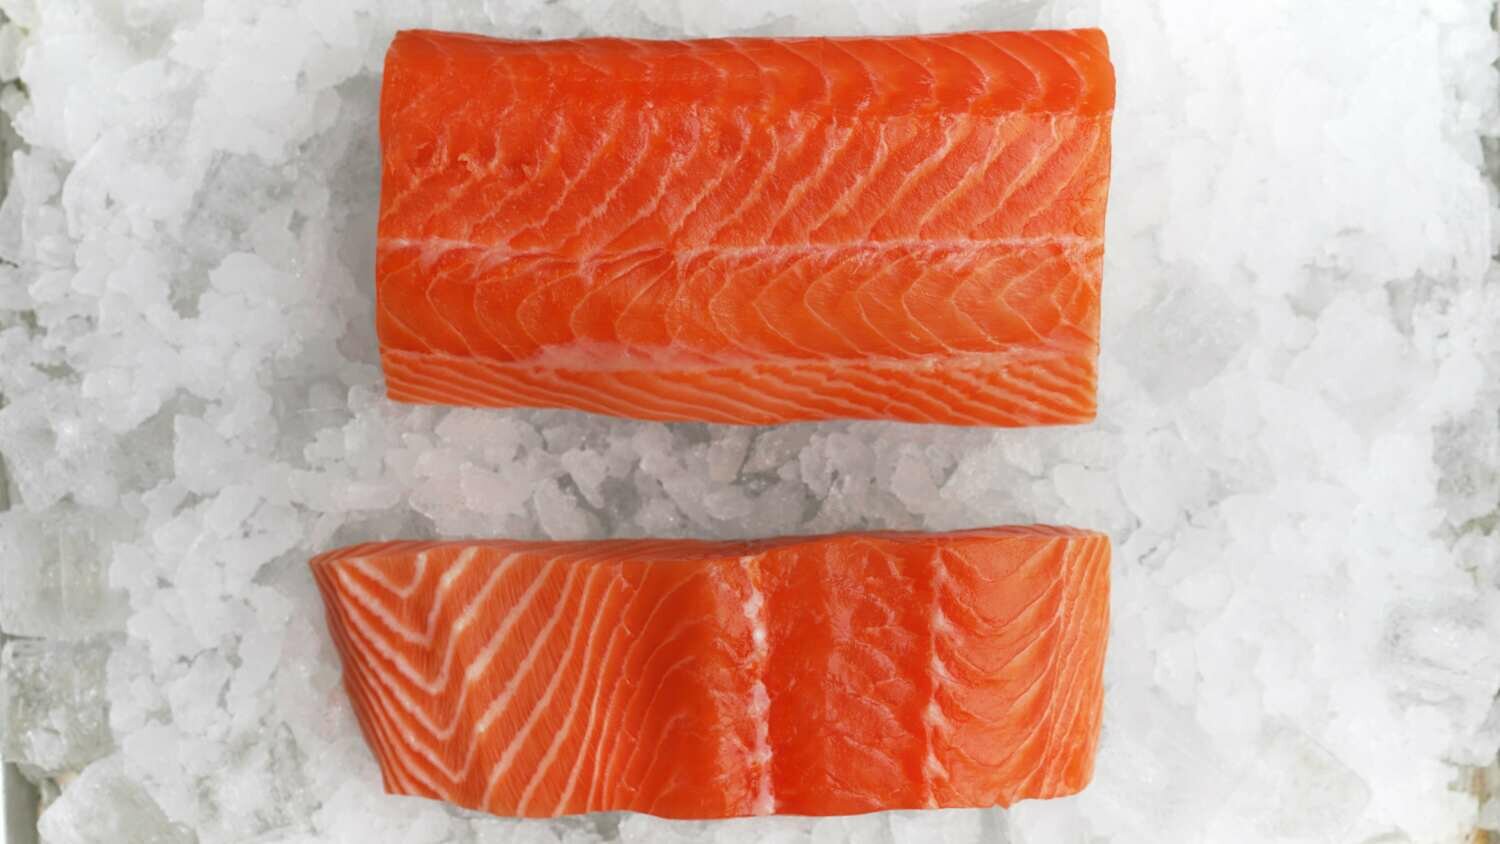 Sashimi Quality Salmon Fillet